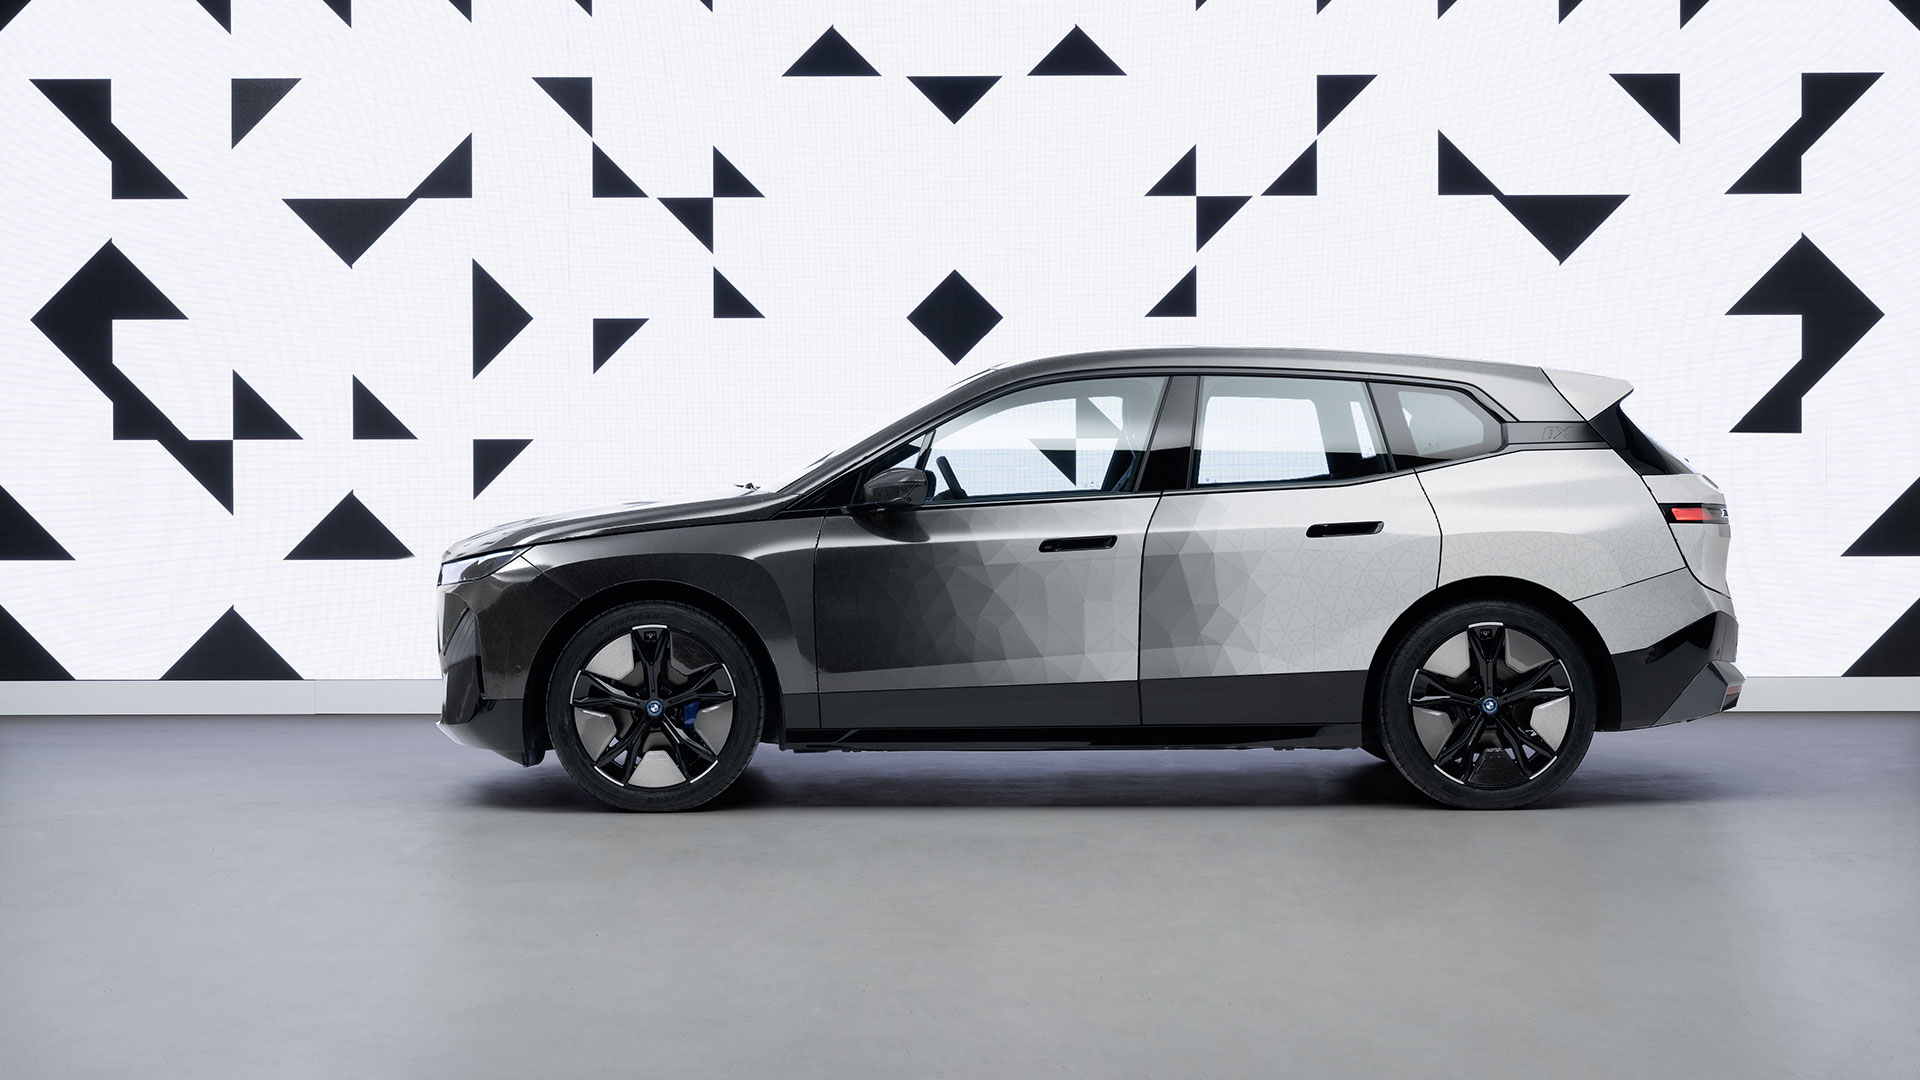 BMW veranstaltet mit dem iX eine Show, die selbst die Farbe wechselt